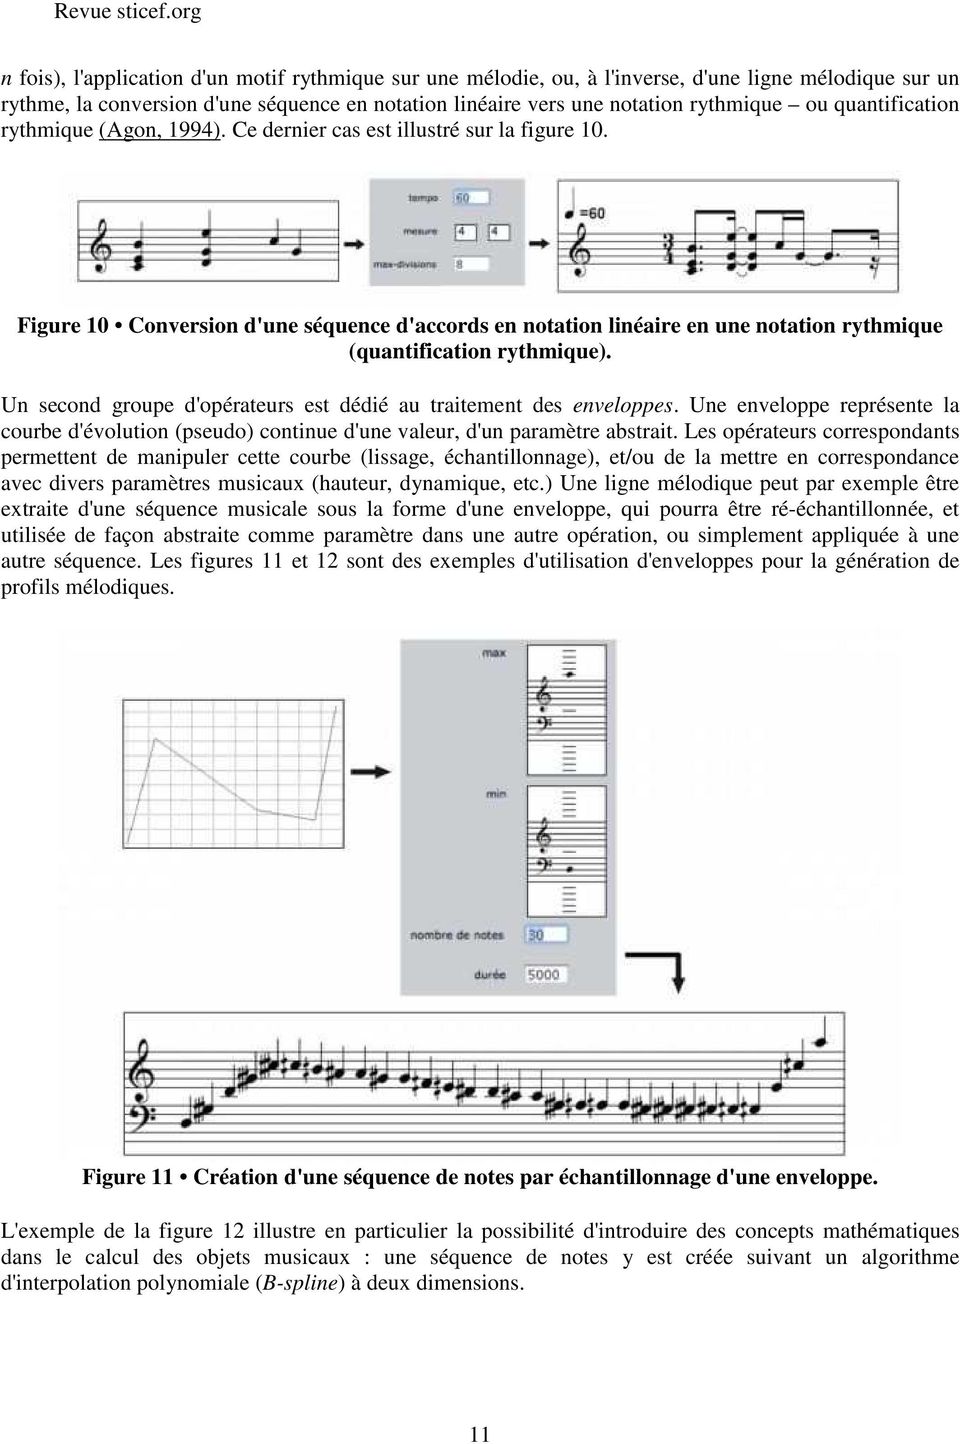 Figure 10 Conversion d'une séquence d'accords en notation linéaire en une notation rythmique (quantification rythmique). Un second groupe d'opérateurs est dédié au traitement des enveloppes.